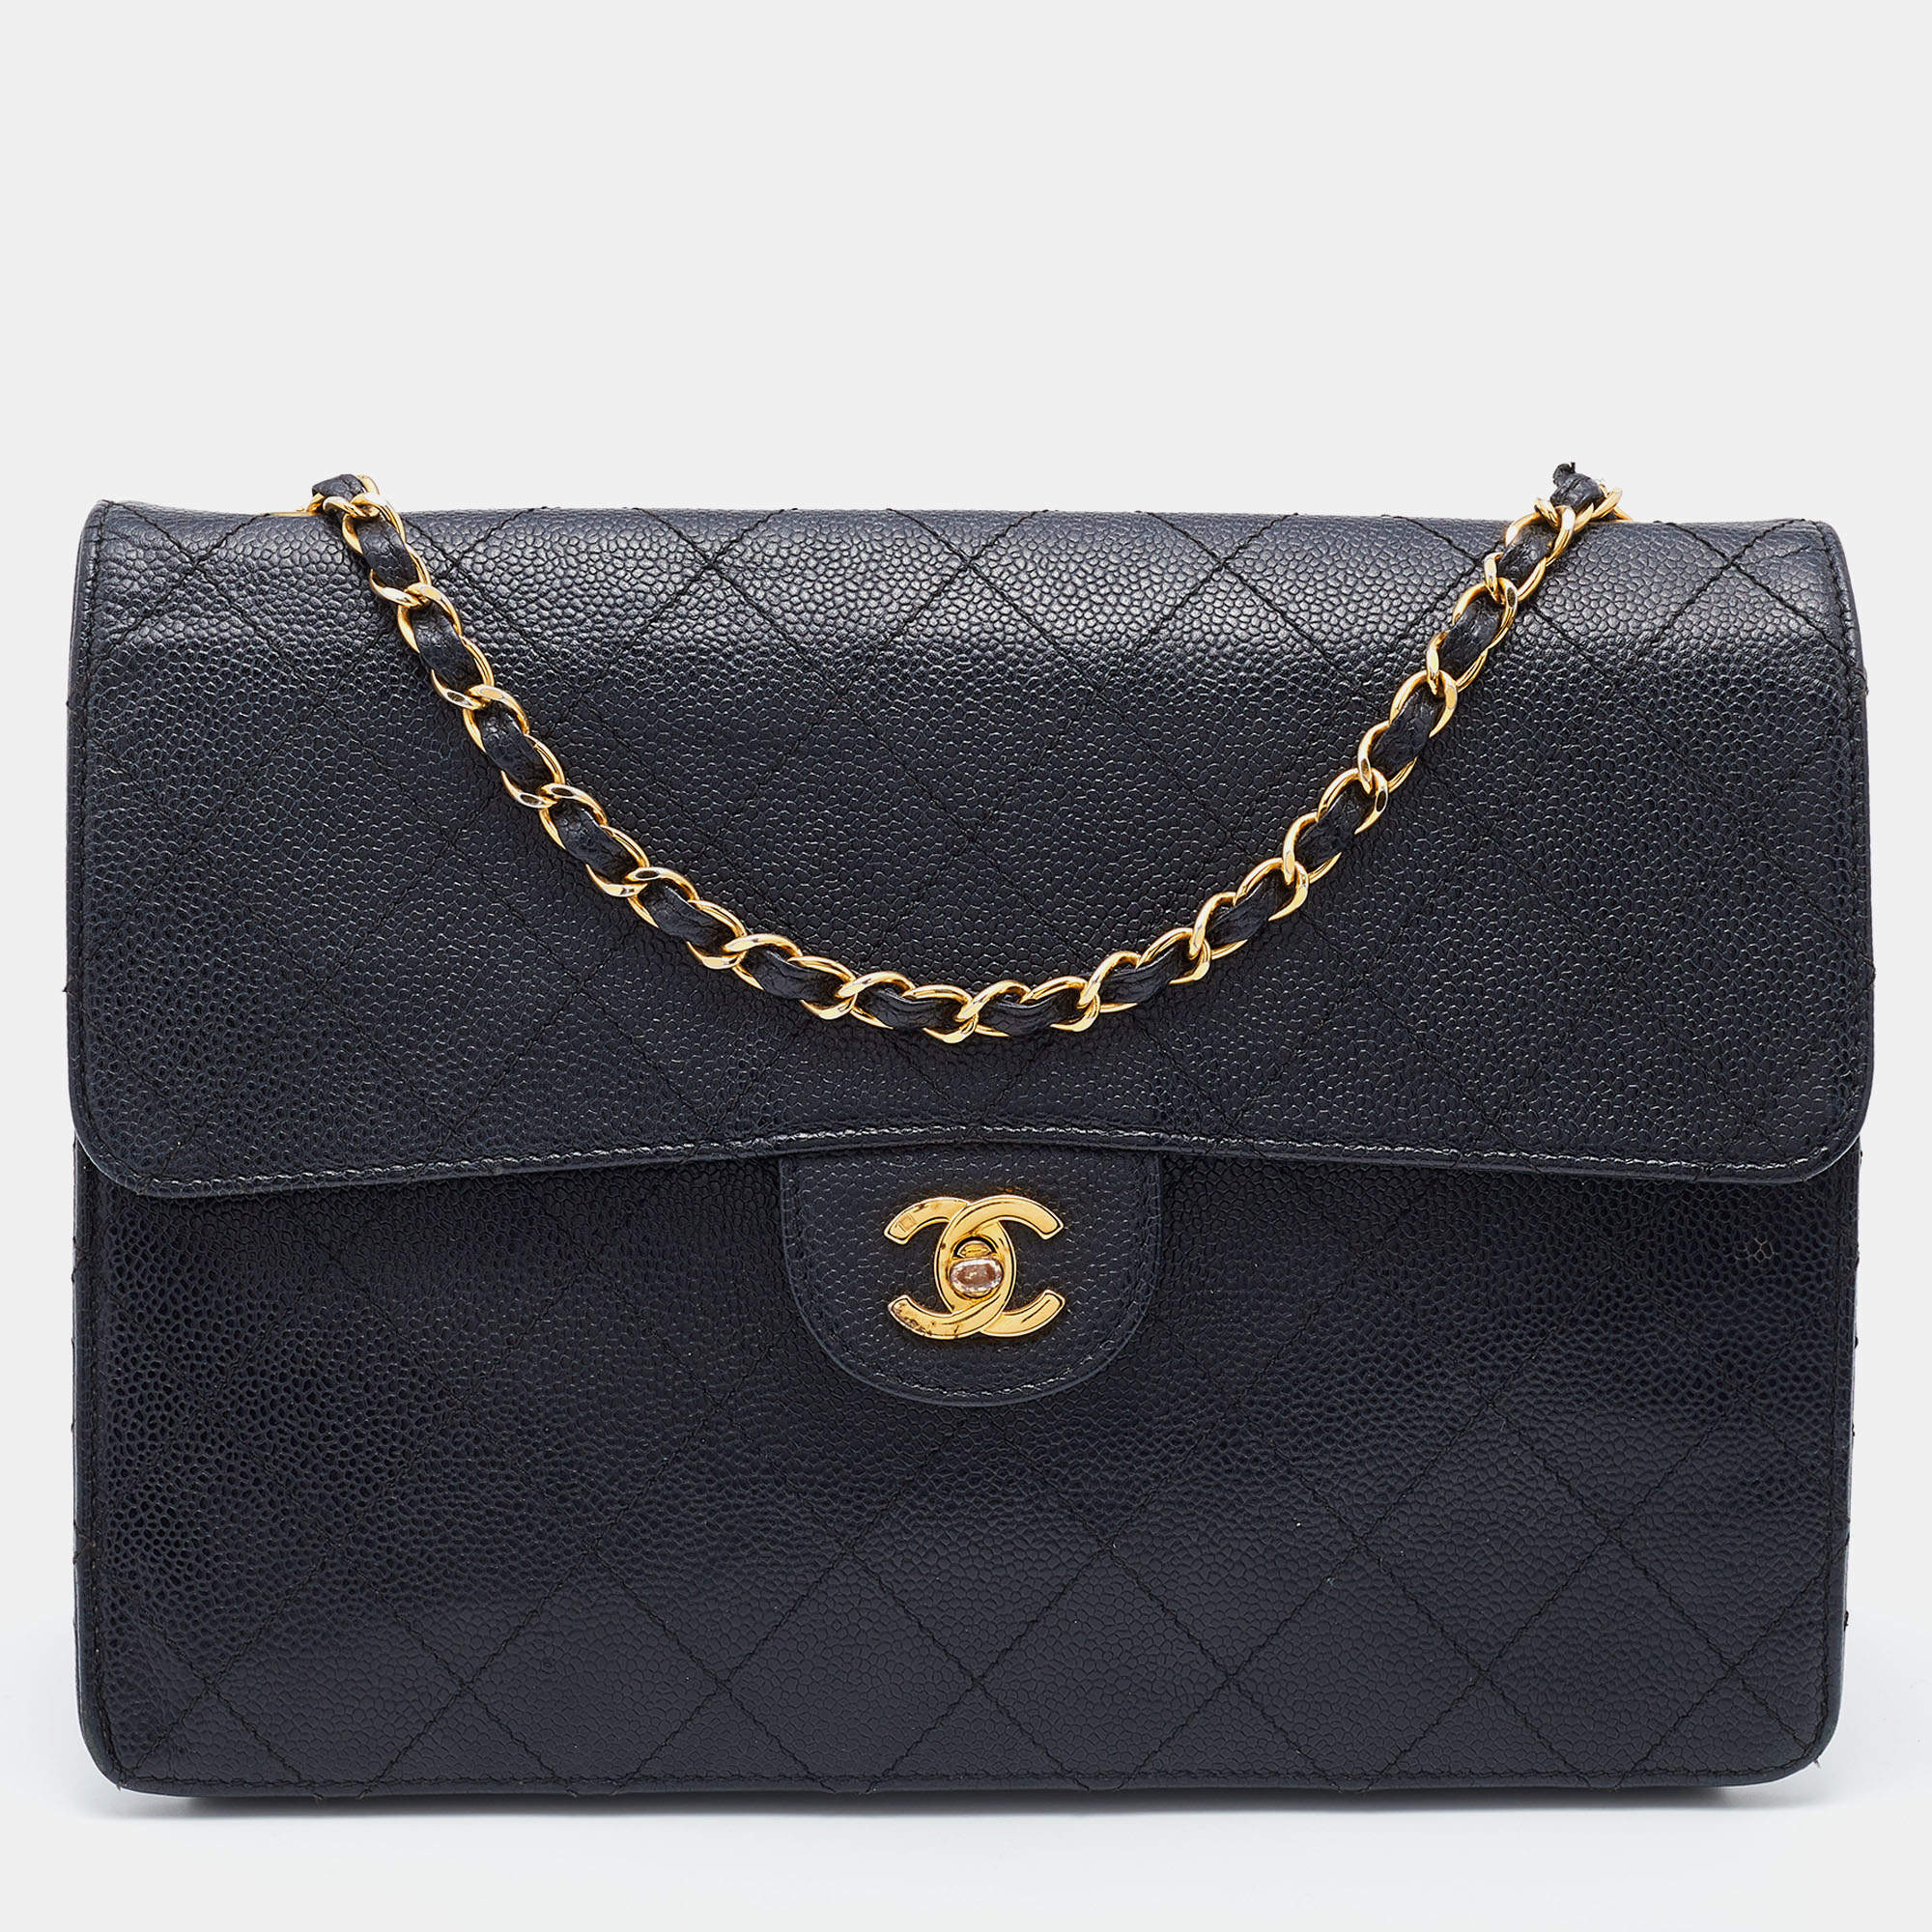 Chanel Black Quilted Caviar Leather Vintage Flap Shoulder Bag